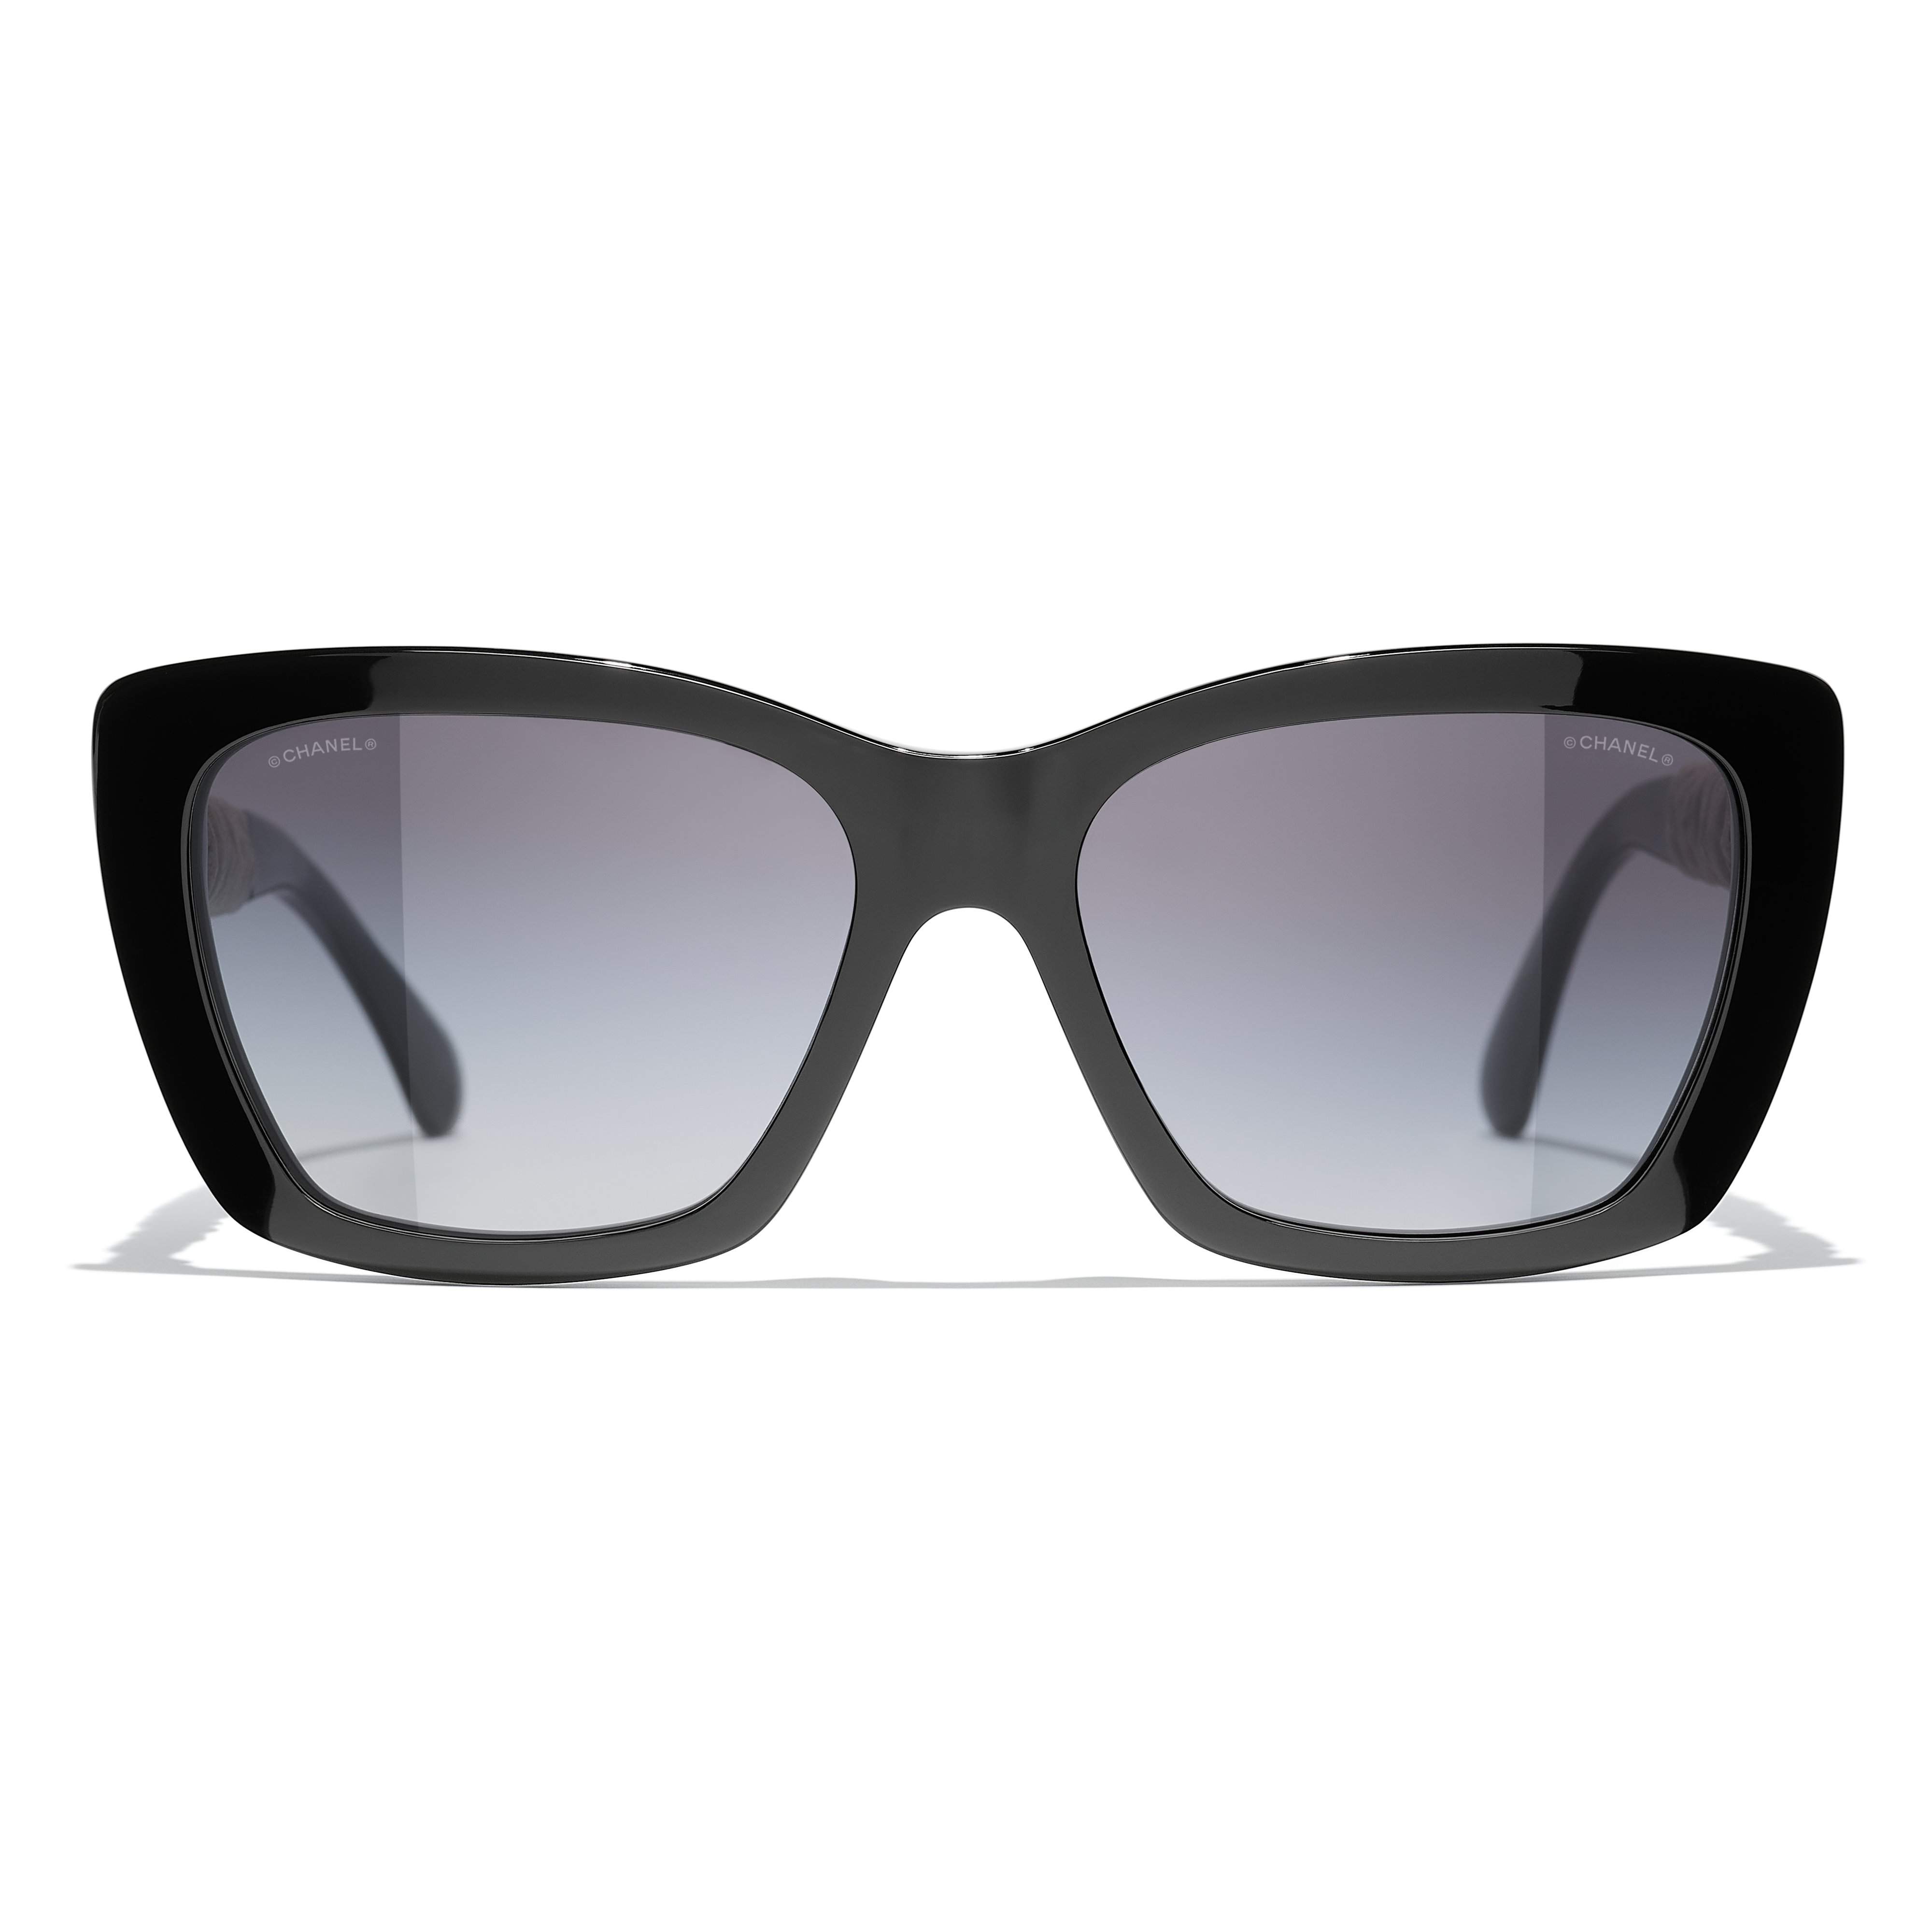 Sunglasses CHANEL CH5476Q 1082S6 57-17 - Black Gradient in stock ...